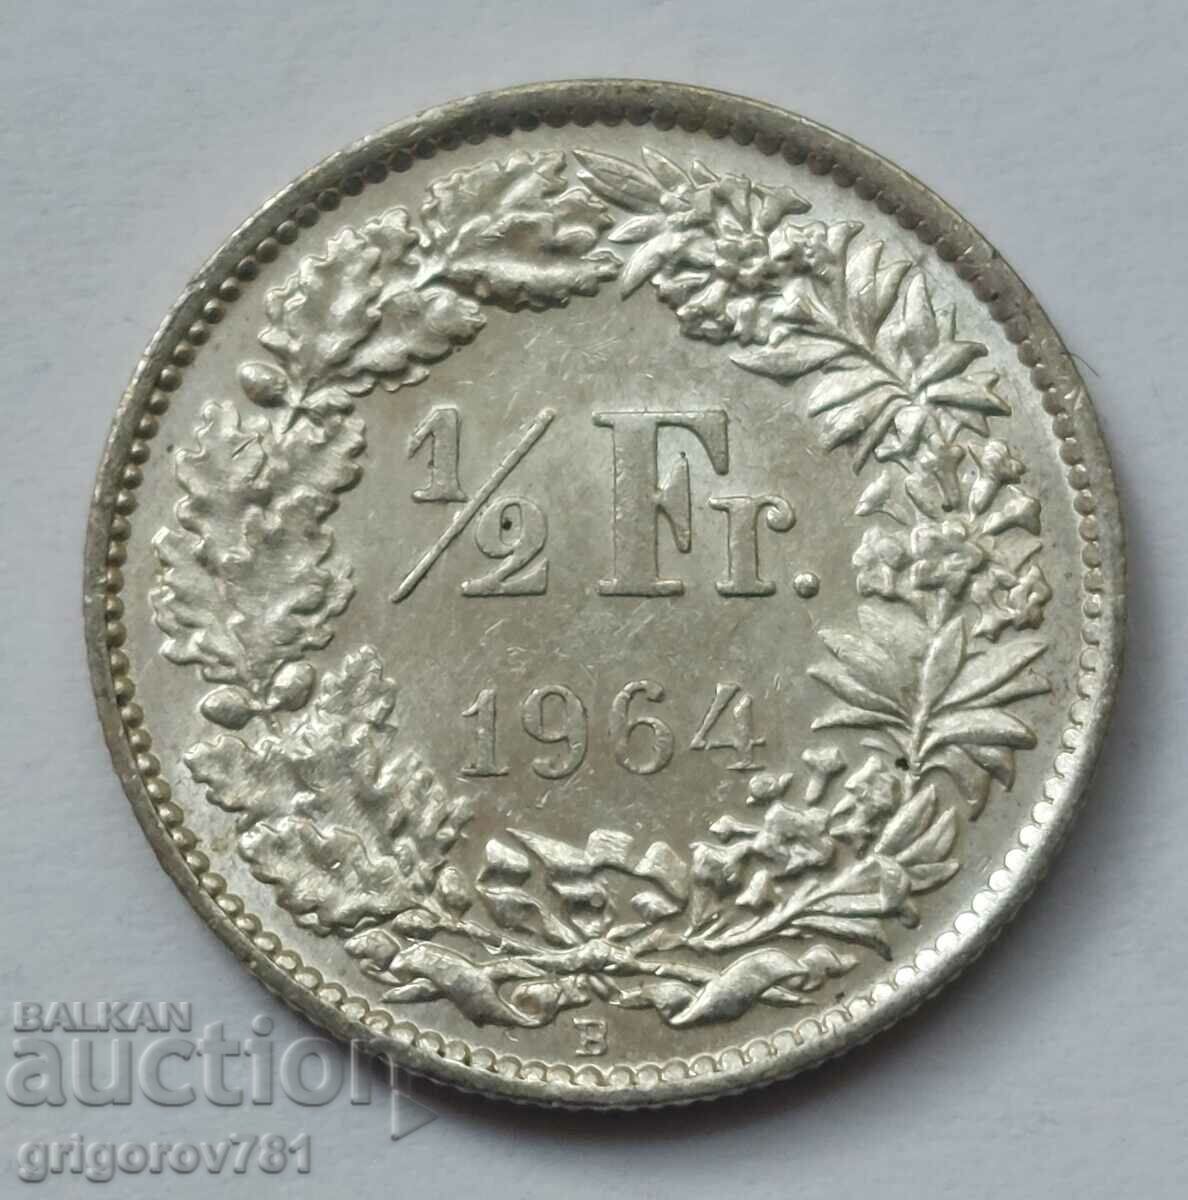 Ασημένιο φράγκο 1/2 Ελβετία 1964 Β - Ασημένιο νόμισμα #114